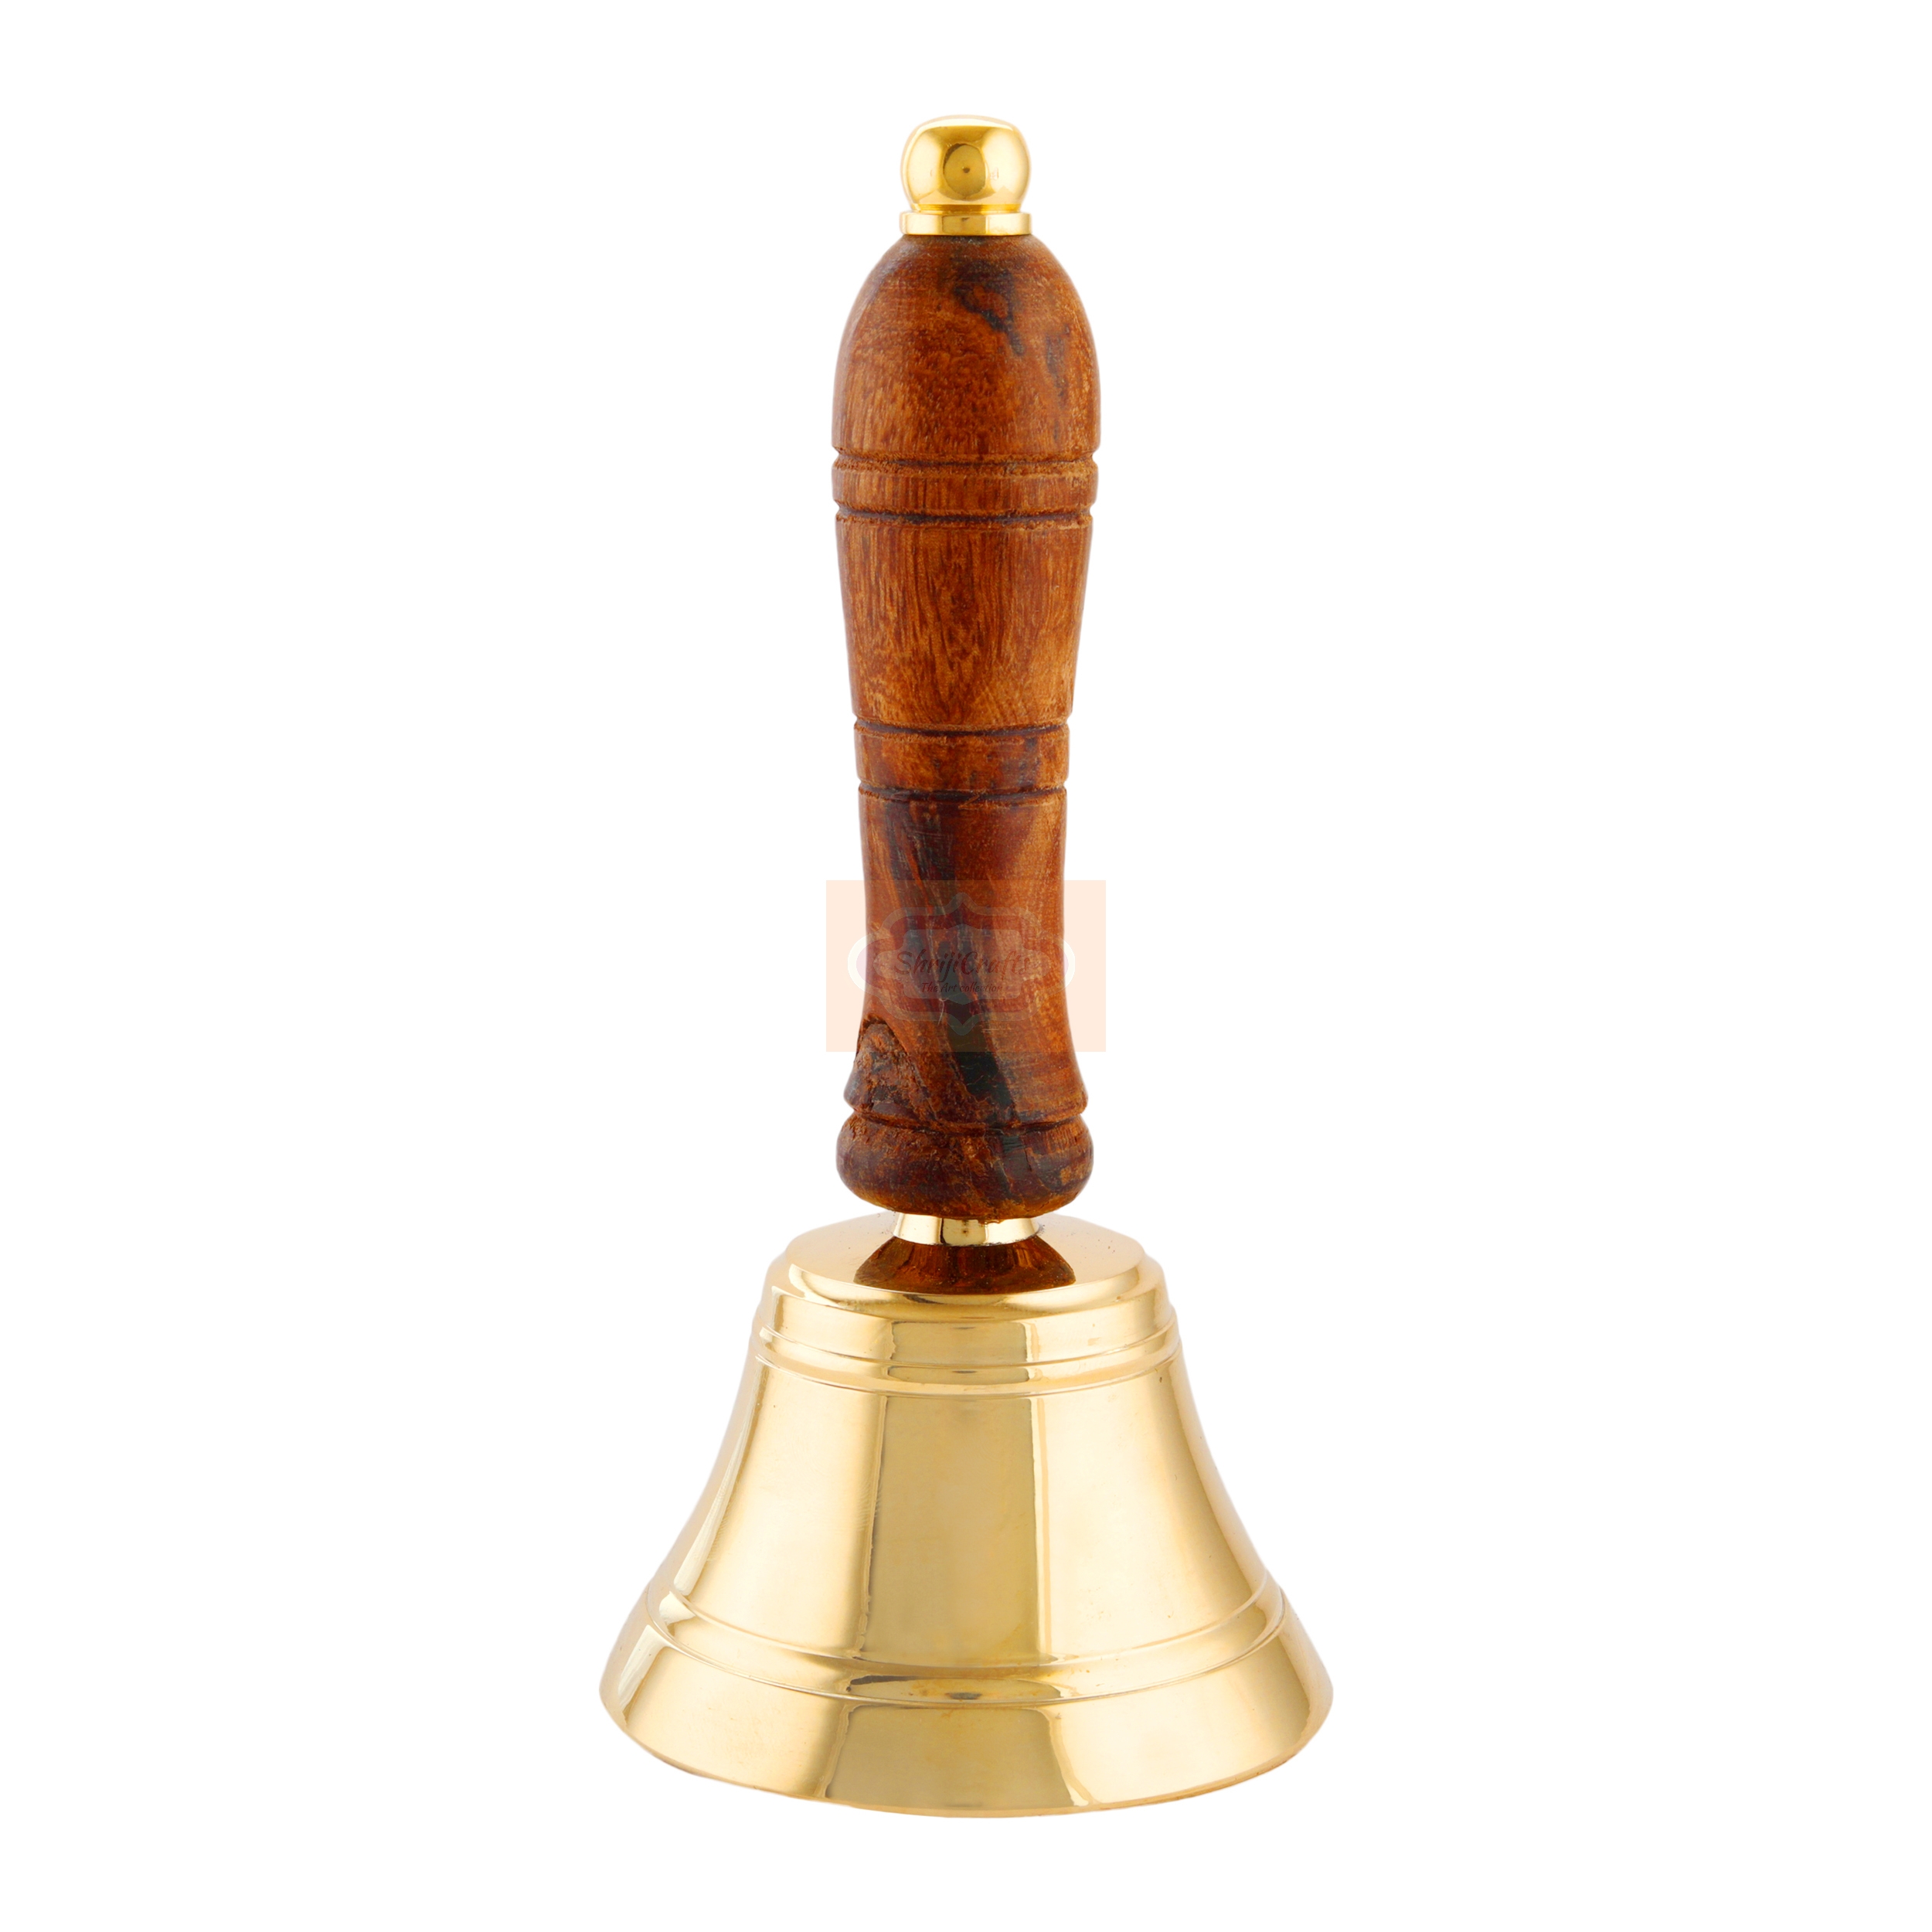 Shrijicrafts | ShrijiCrafts® Christmas Brass Hand Bell/Gold Finish Hand Bells with Wooden Handle ~ Maritime Church Bell, Brass School Bell Best Gift 1